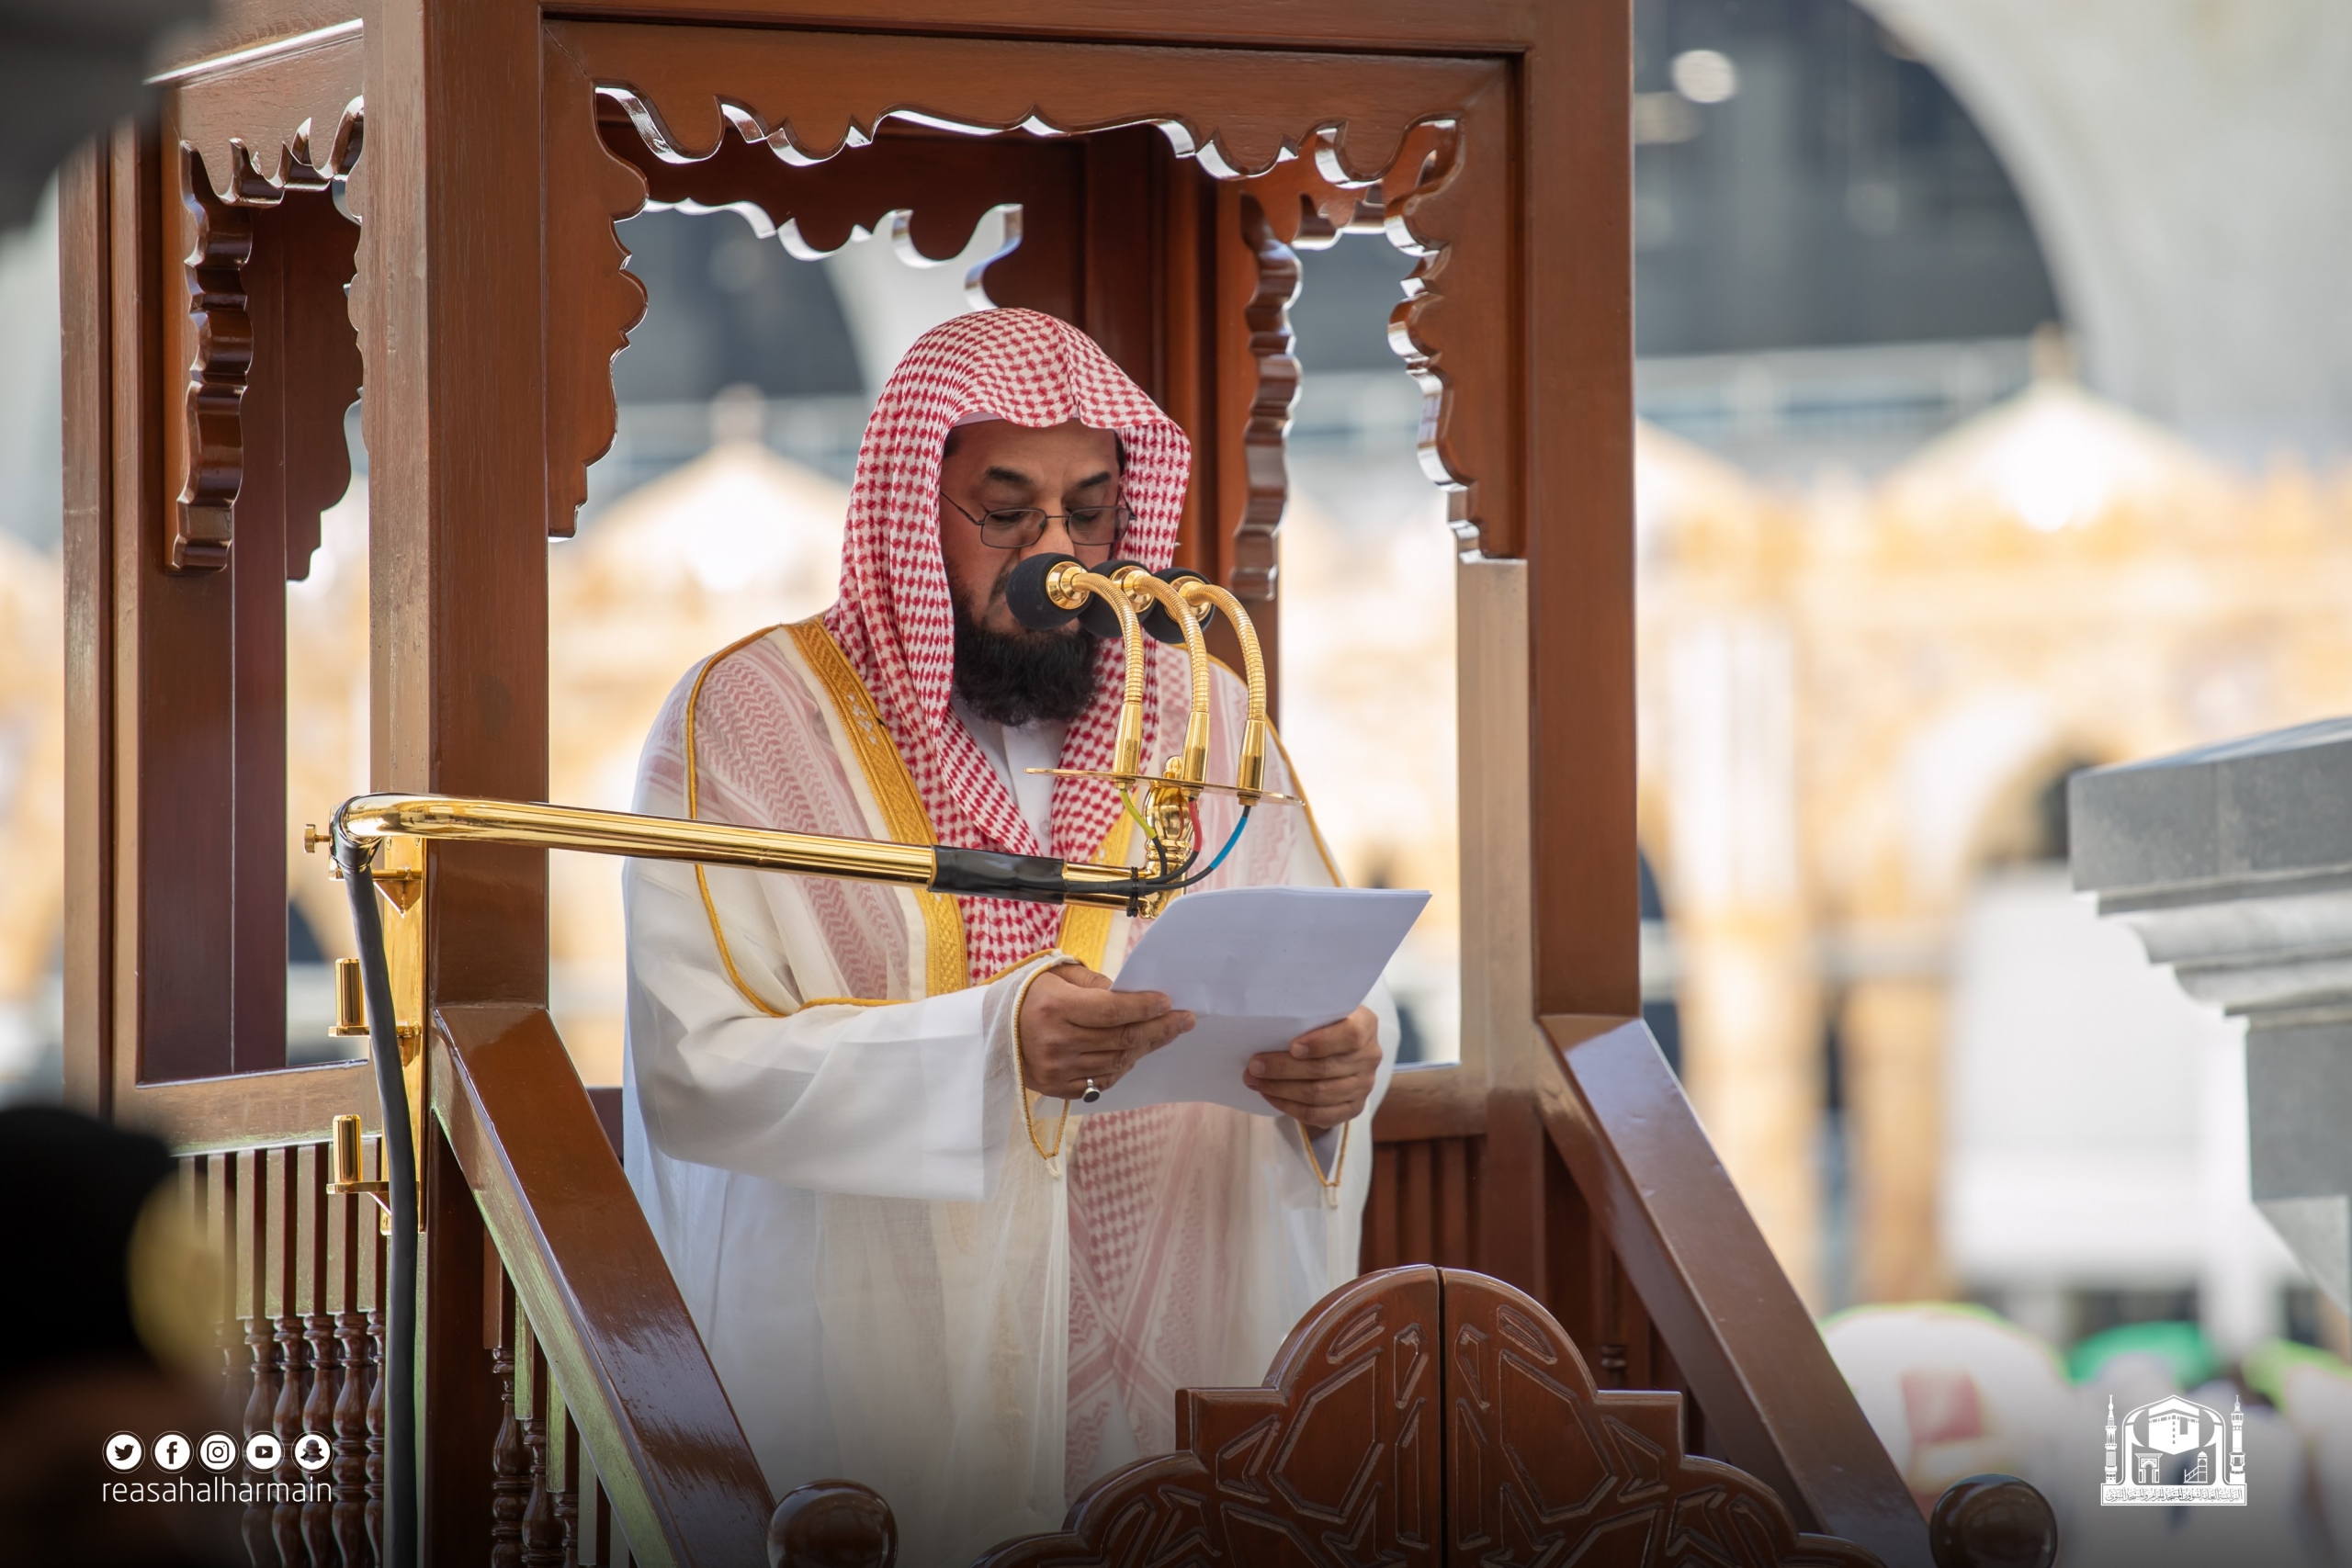 الشيخ سعود الشريم يغالب دموعه في وداع رمضان